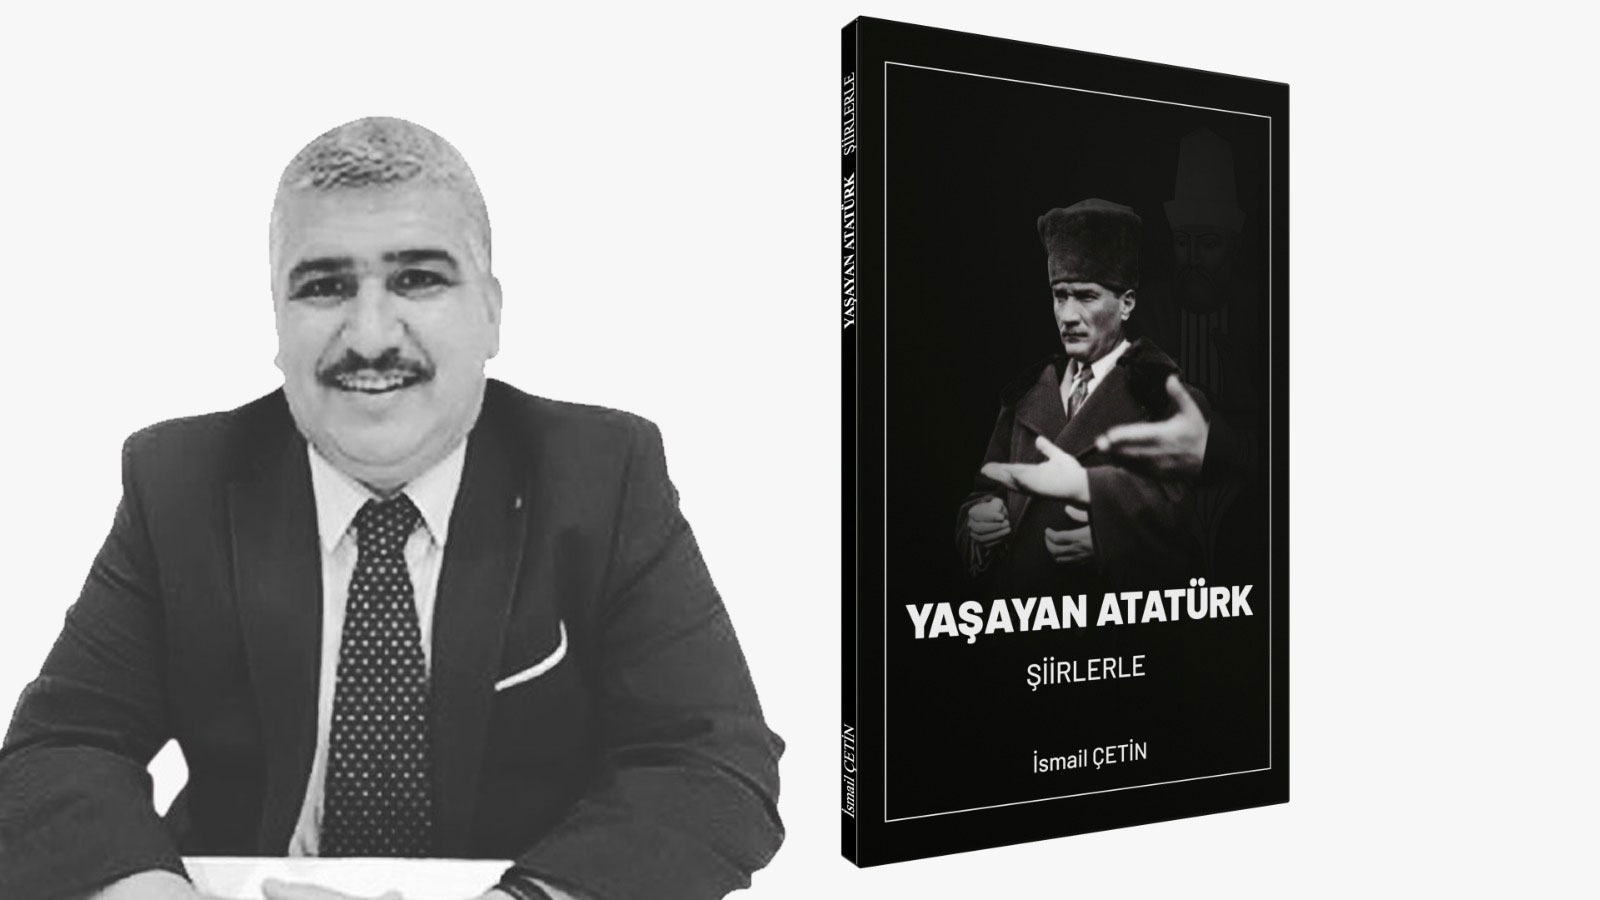 İsmail Çetin'in kaleminden "Yaşayan Atatürk" kitabı çıktı